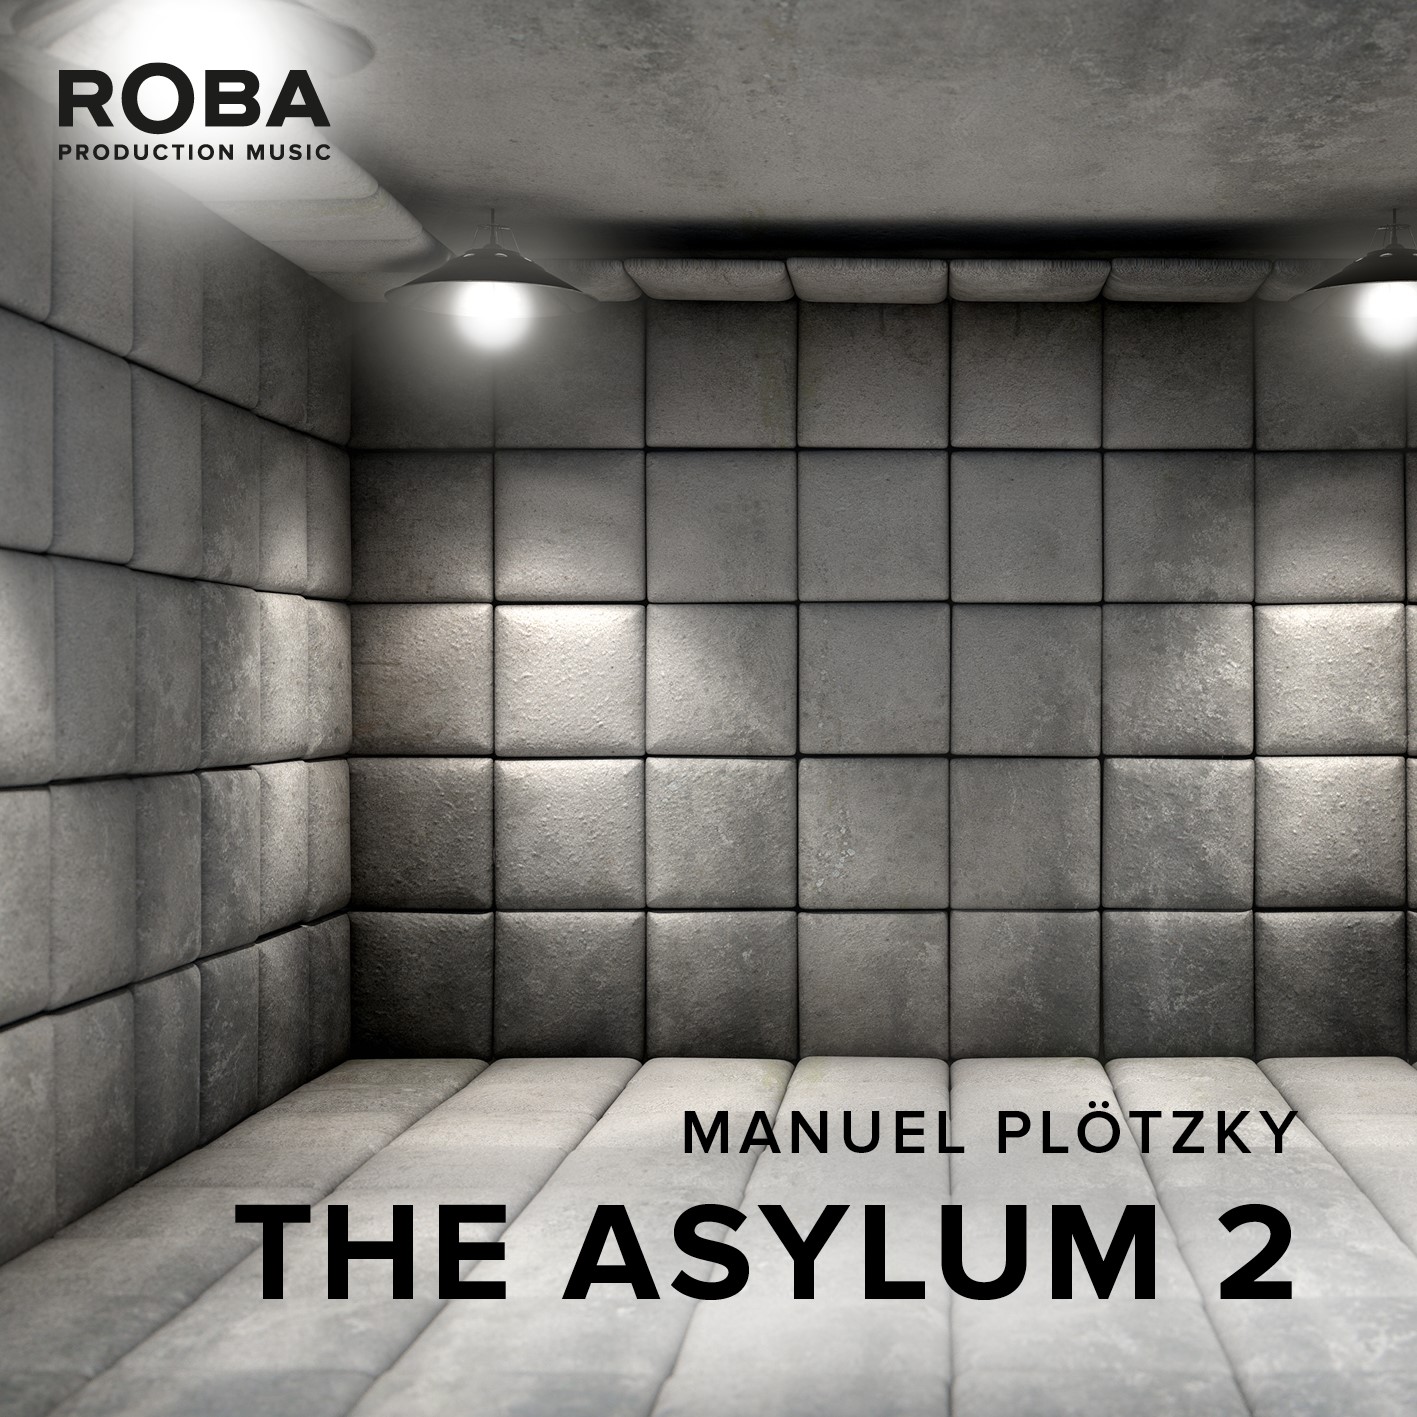 The Asylum 2